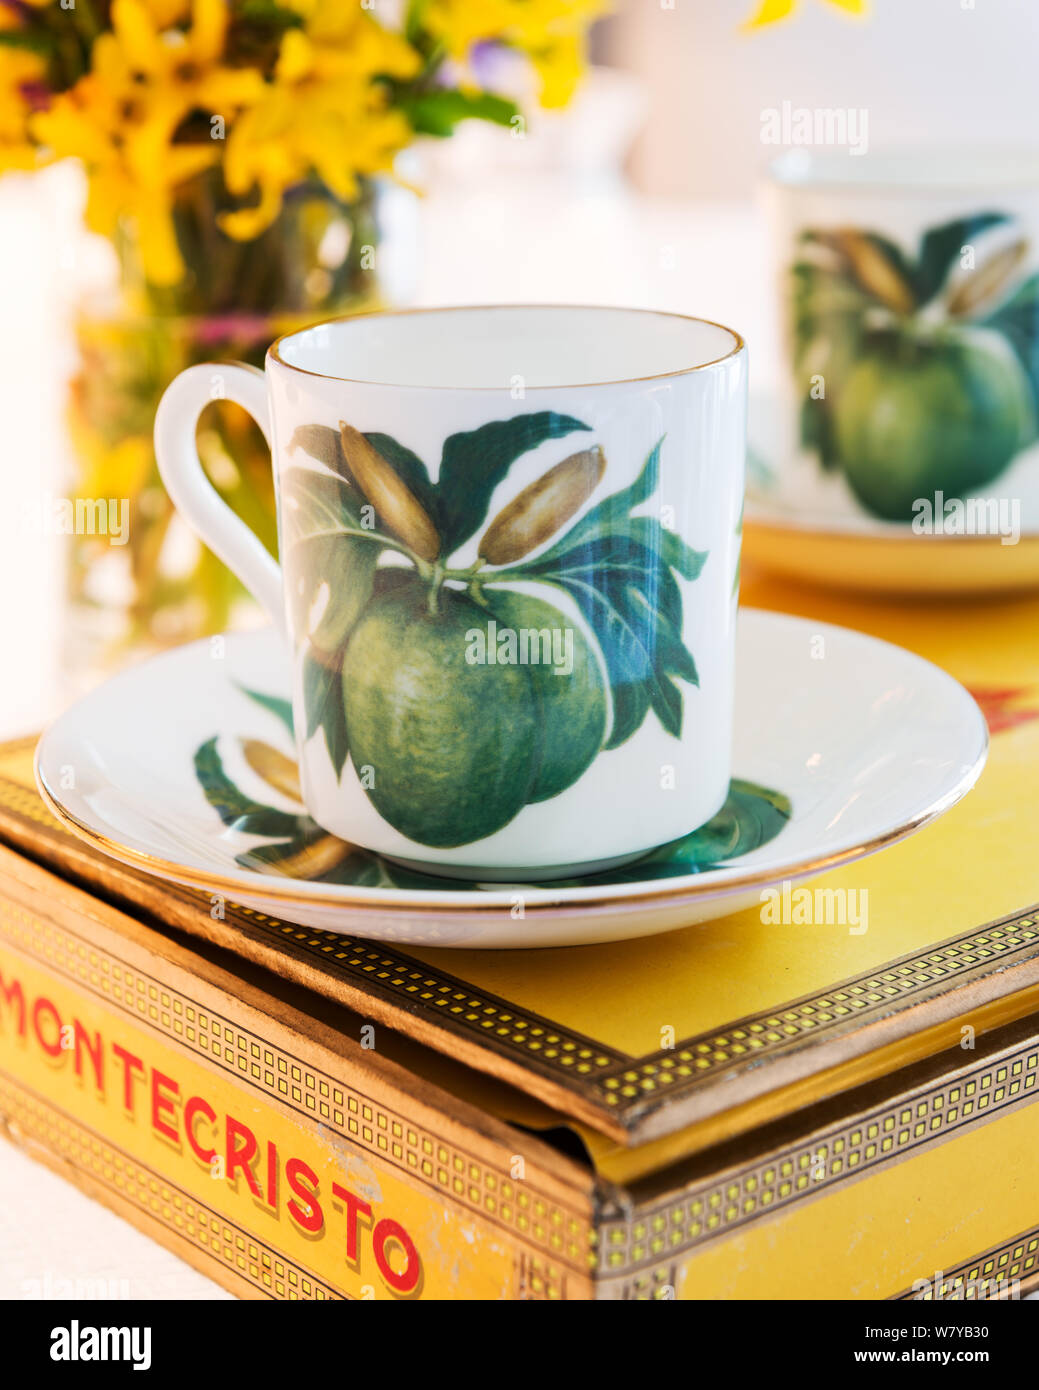 Kaffee von Jenny's Mein brotfrucht Sammlung auf Montecristo Zigarre box Stockfoto